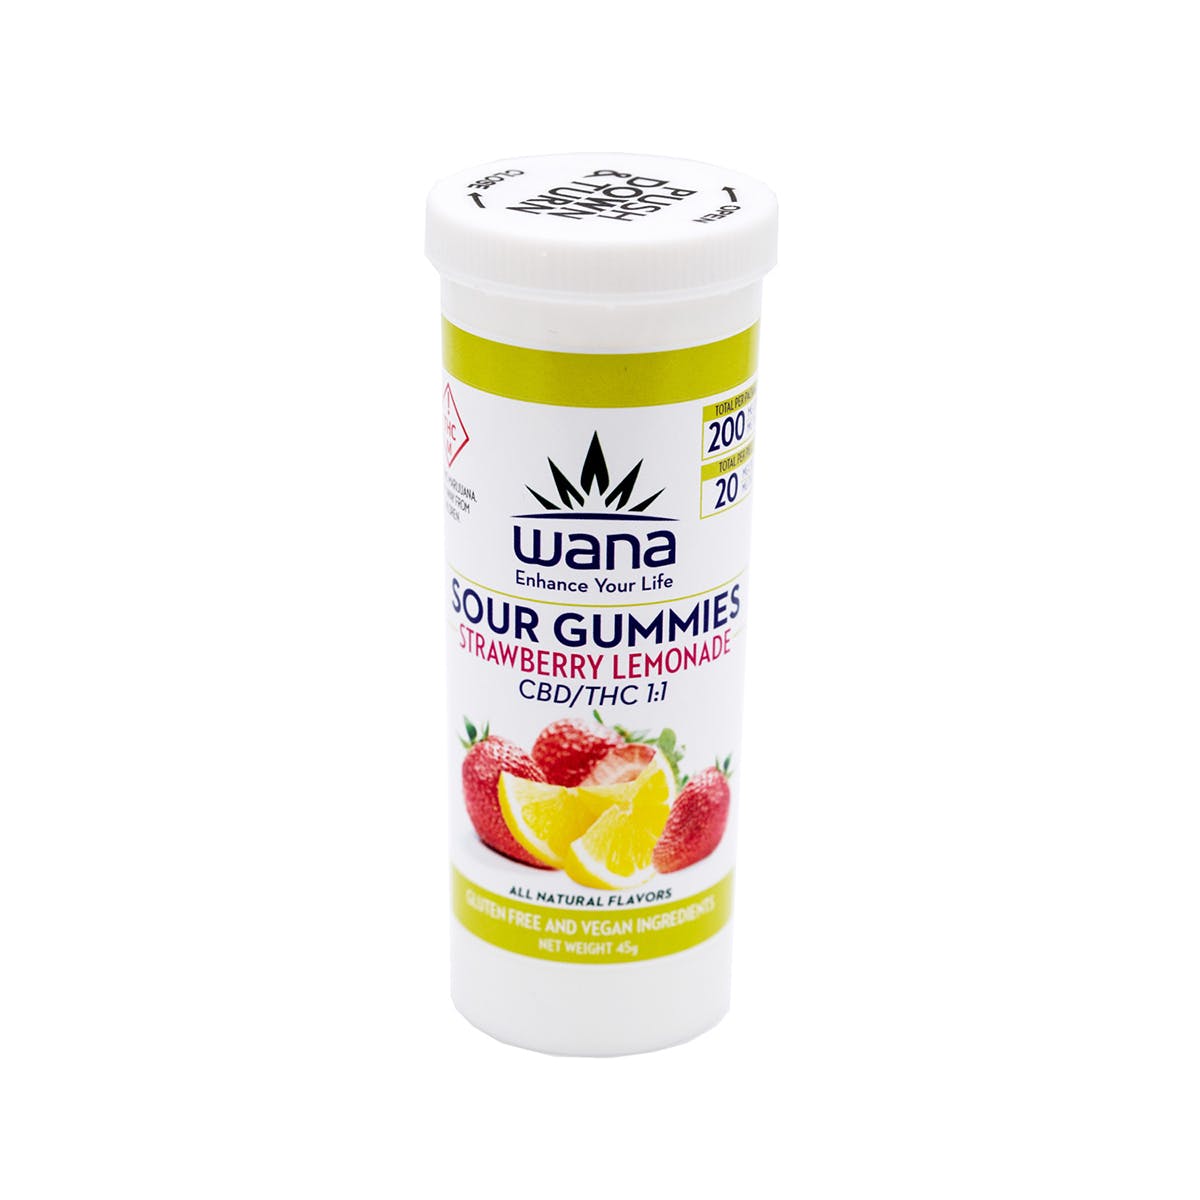 marijuana-dispensaries-buddy-boy-baker-med-18-2b-in-denver-strawberry-lemonade-11-gummies-200mg-med